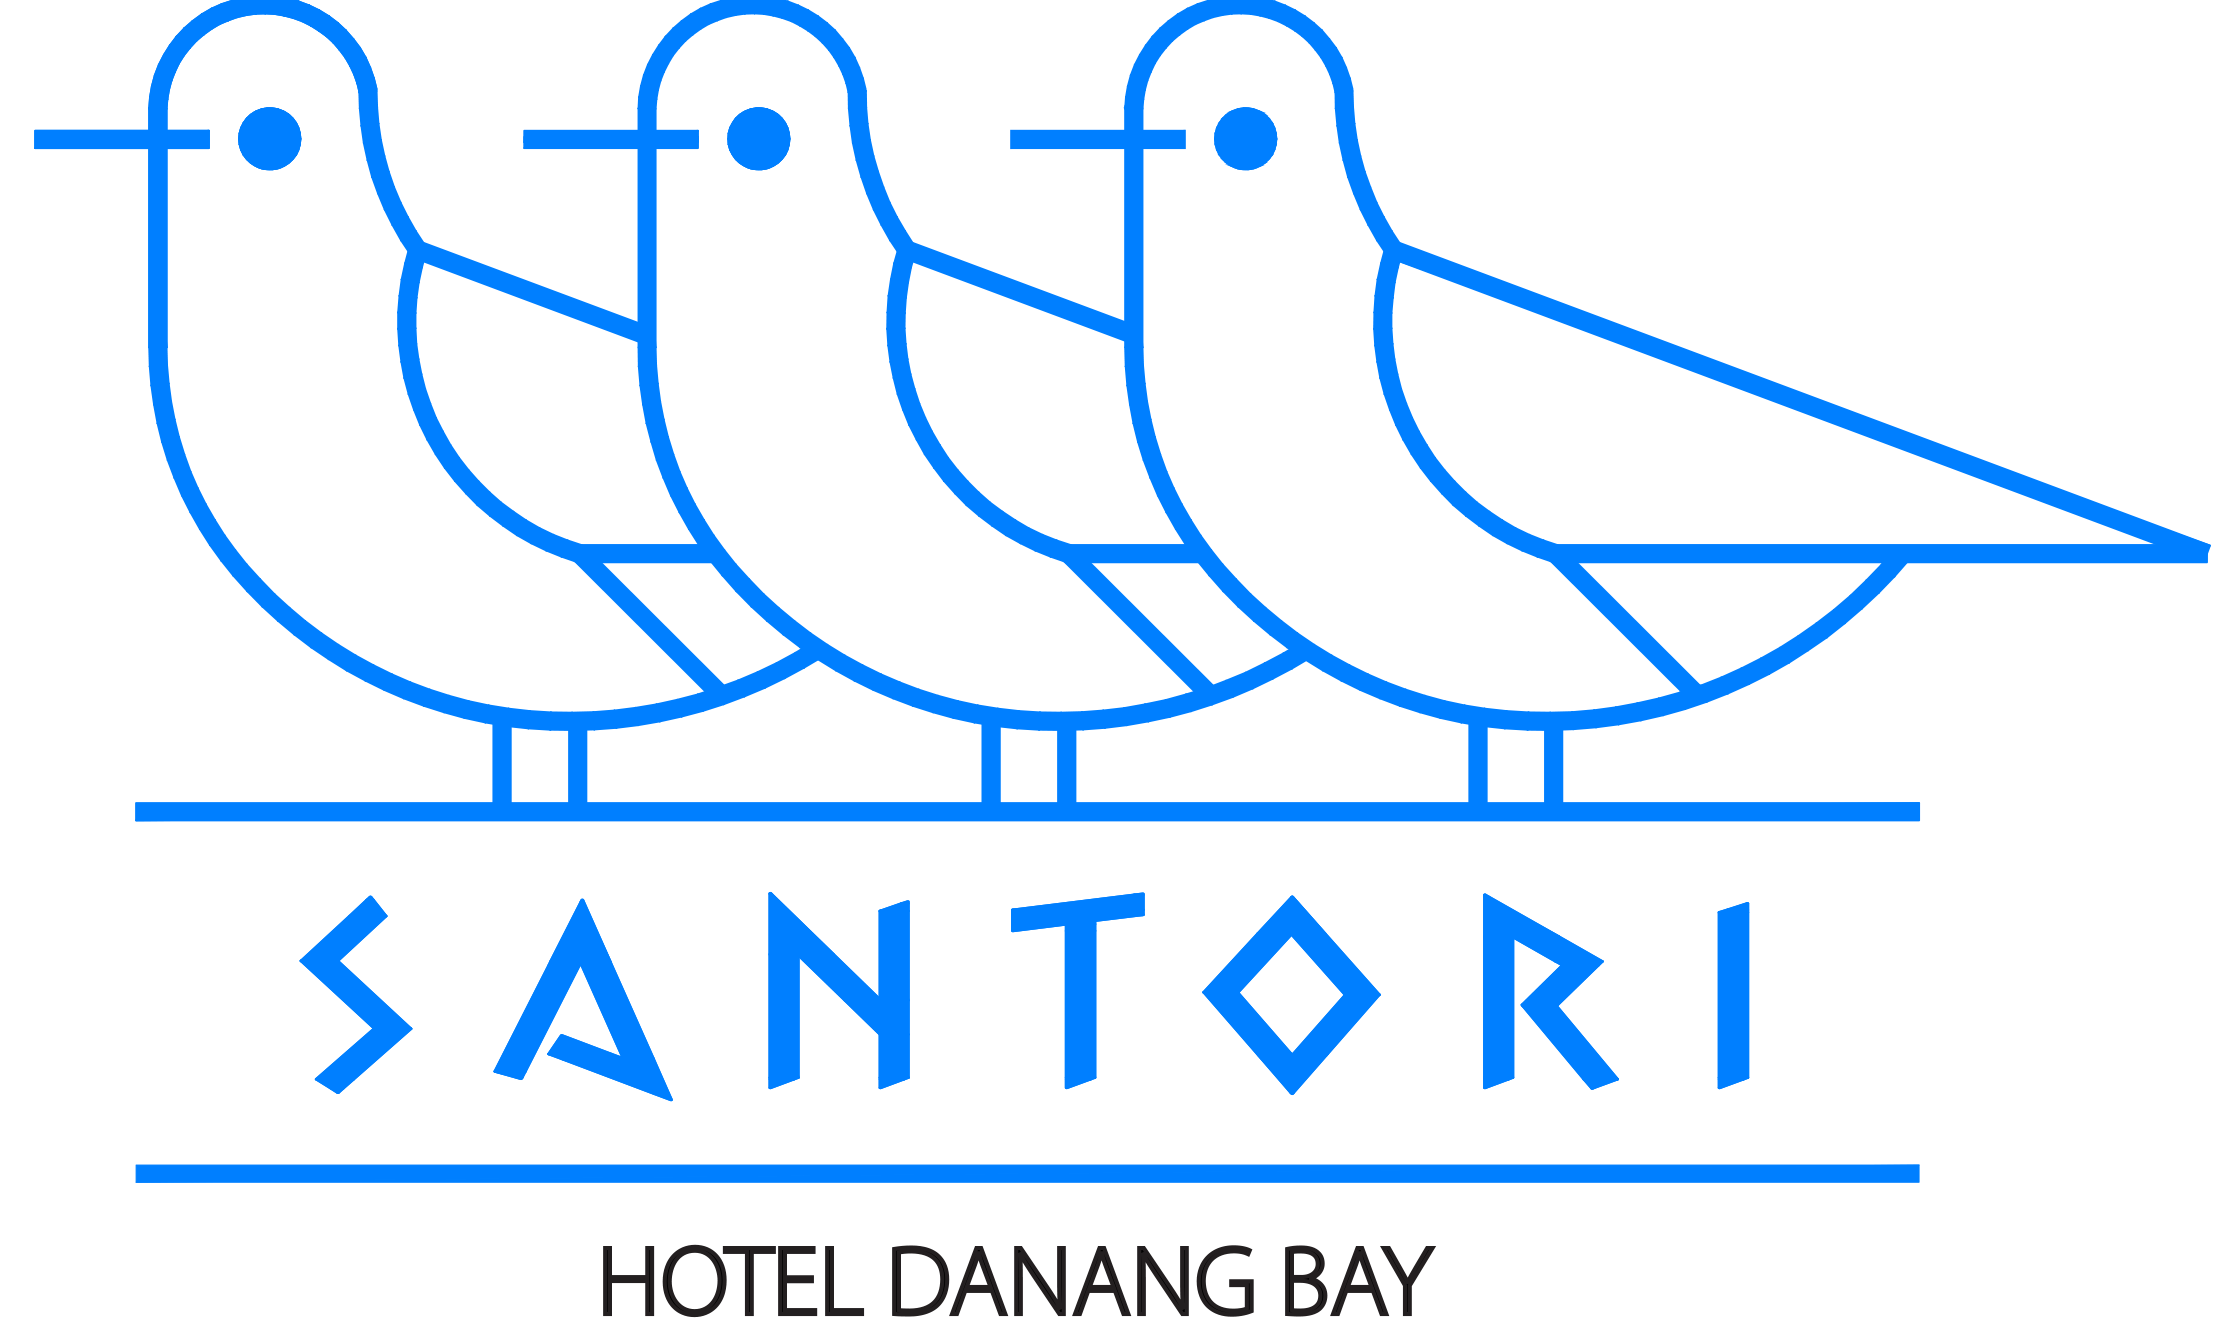 Khuyến mãi - Cuối Tuần Trăng Mật Tại Santori Hotel Danang Bay